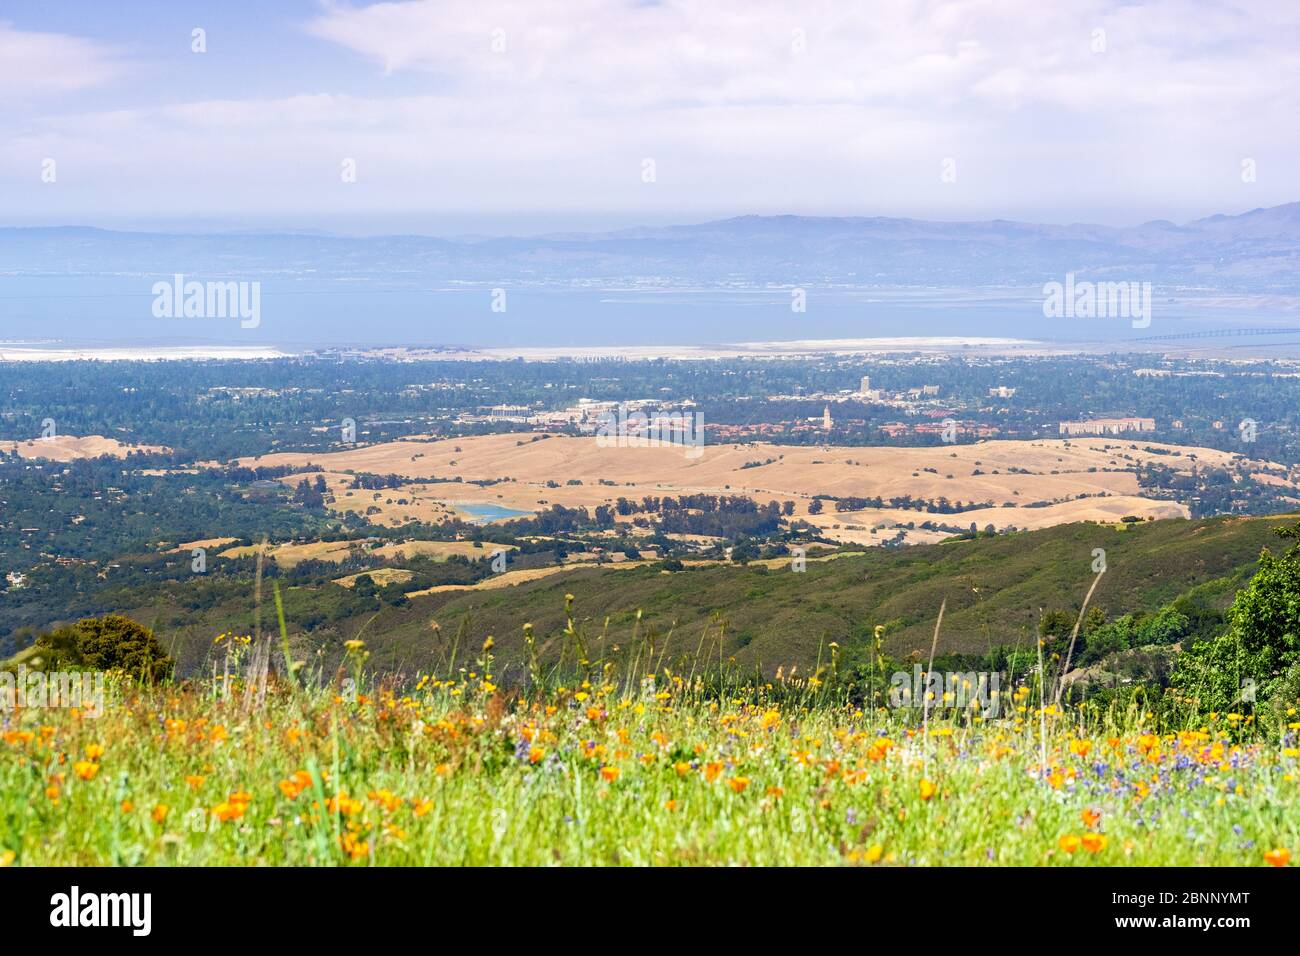 Luftaufnahme von Palo Alto, Stanford University, Redwood City und Menlo Park, Teil des Silicon Valley; Wildblumenfeld im Vordergrund sichtbar; San Fr. Stockfoto